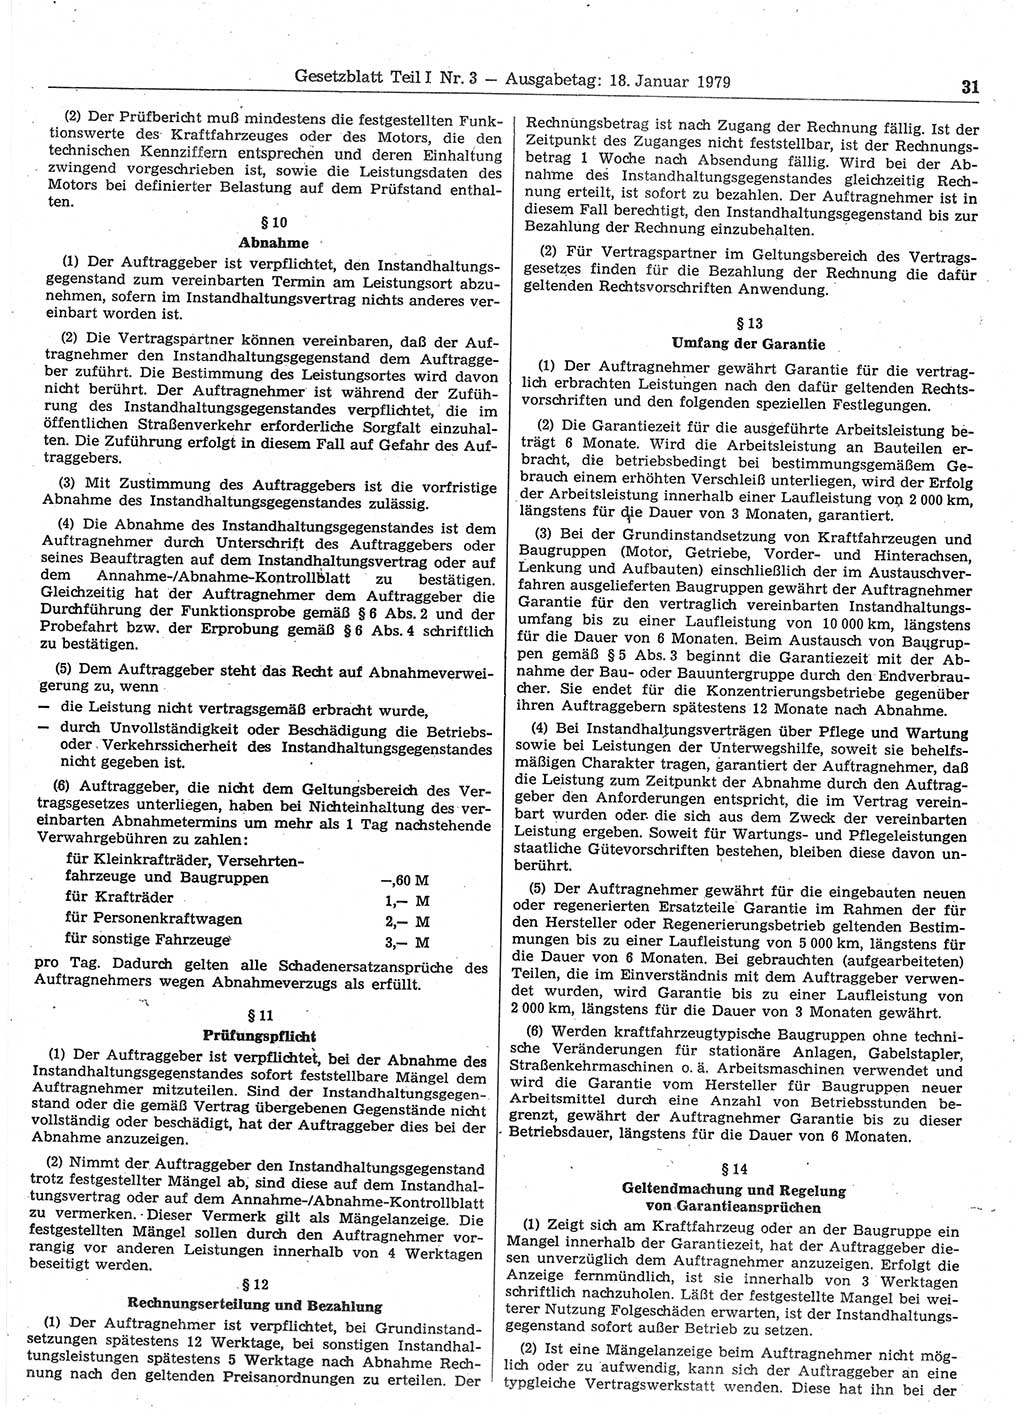 Gesetzblatt (GBl.) der Deutschen Demokratischen Republik (DDR) Teil Ⅰ 1979, Seite 31 (GBl. DDR Ⅰ 1979, S. 31)